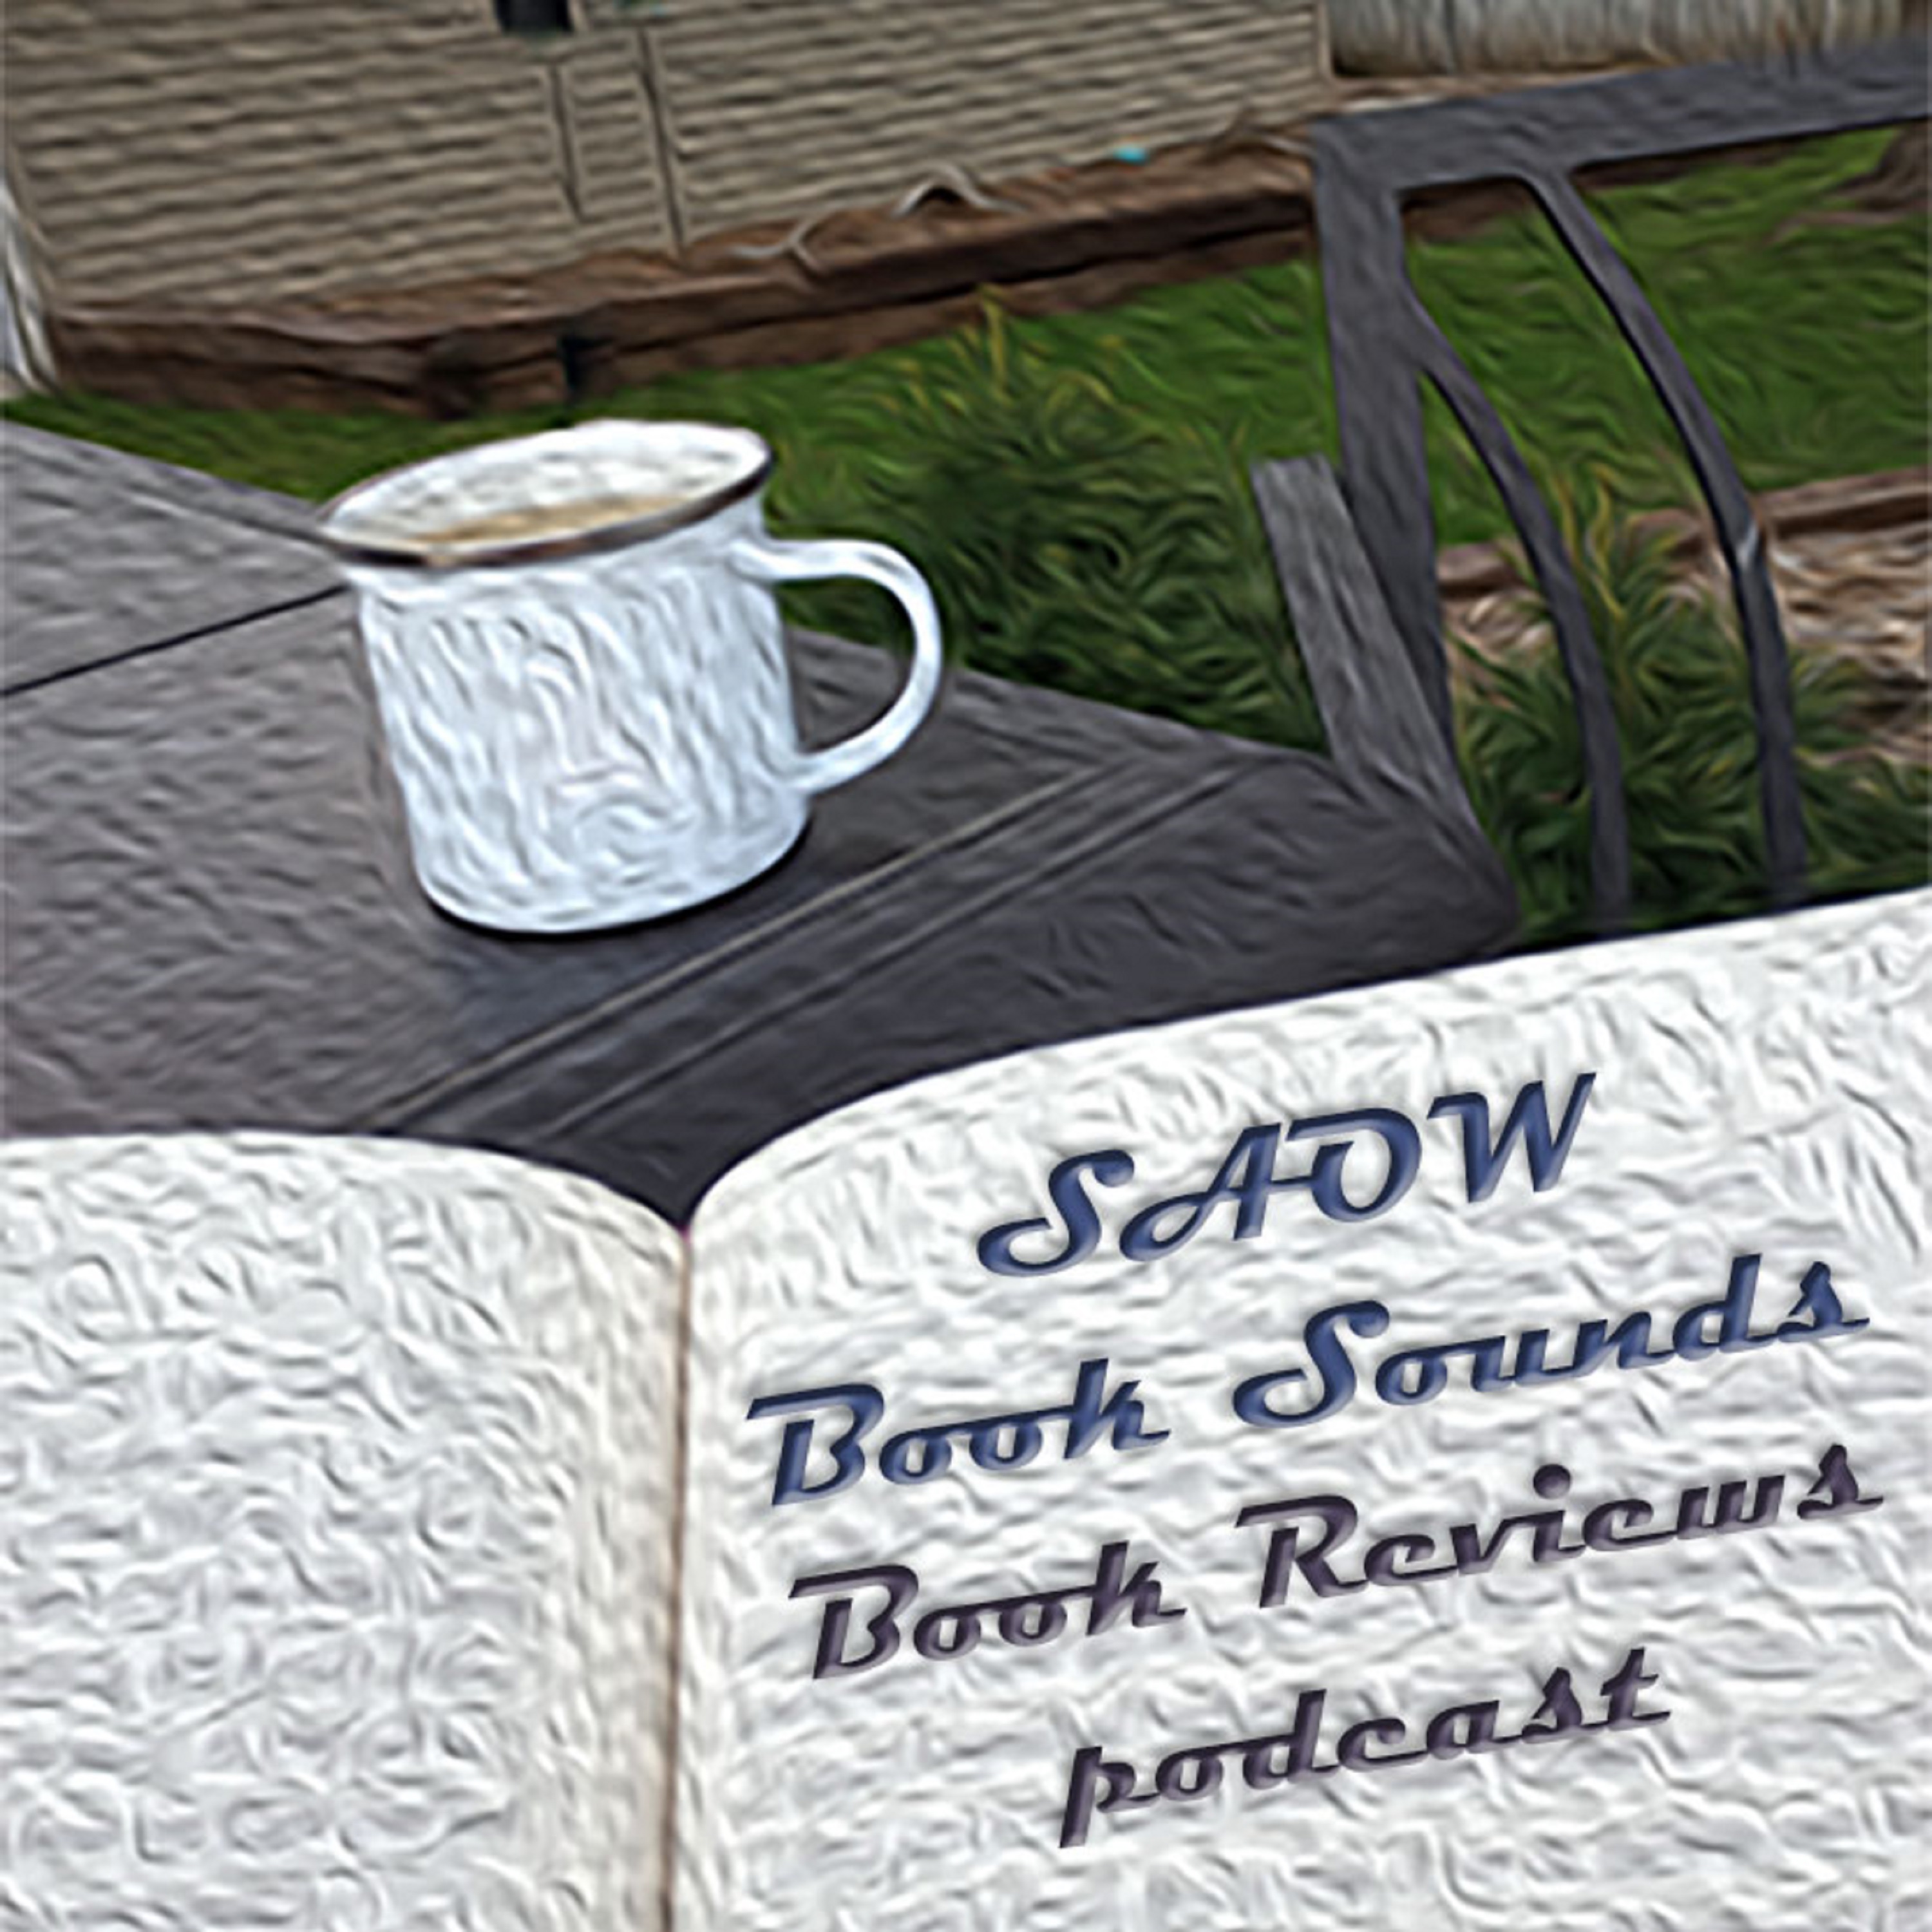 Artwork for SAOW Book Sounds Book Reviews